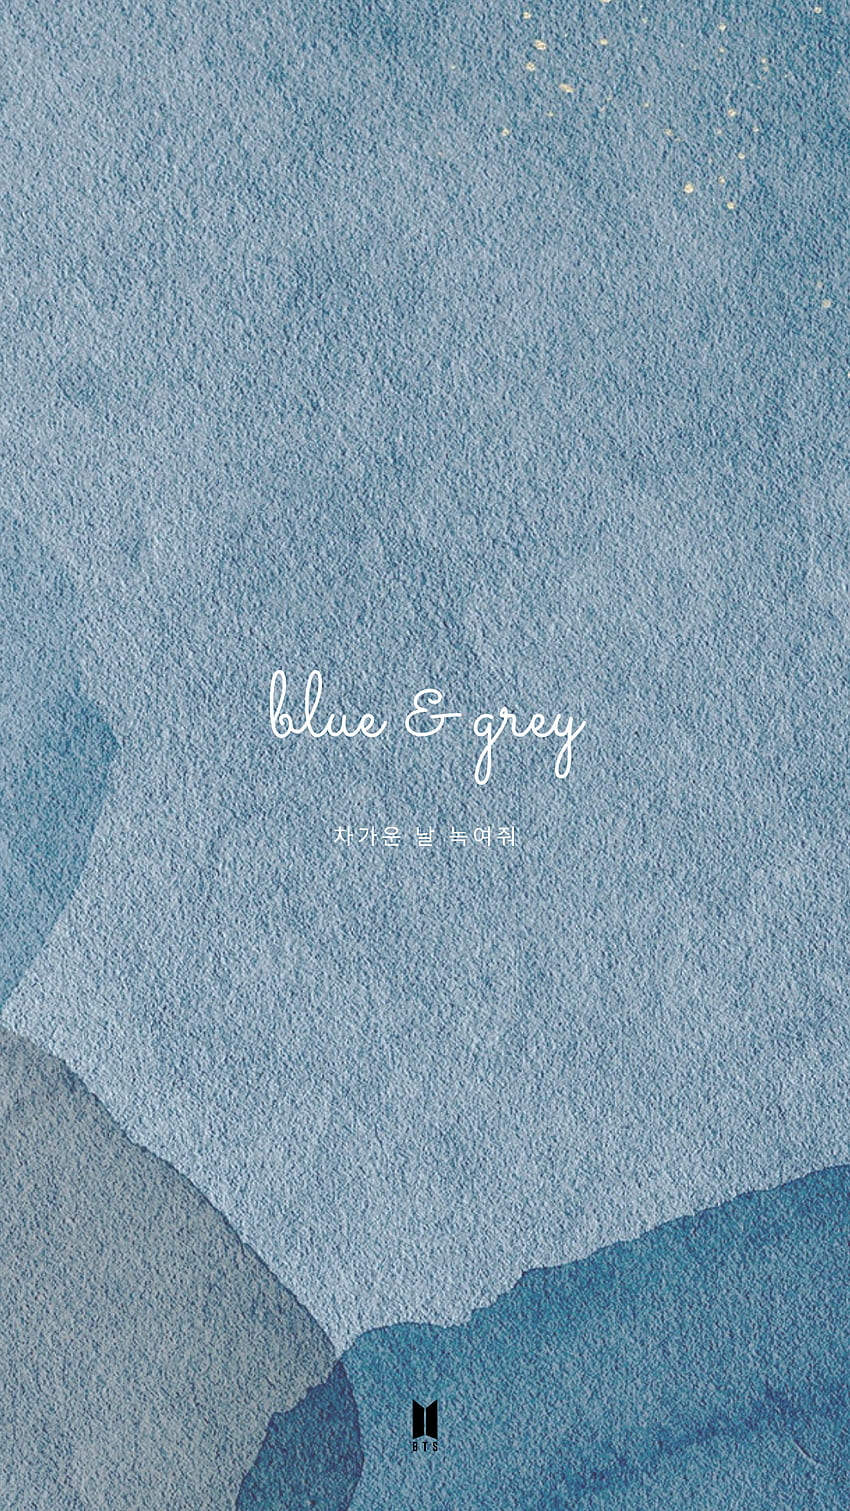 Màu sắc của Blue and Grey BTS wallpaper mang lại cảm giác dịu mát và thư thái cho người dùng, hợp với những ai yêu thích những tông màu pastel. Từ hình ảnh của BTS, bạn sẽ cảm thấy thật đẹp và êm dịu khi sử dụng làm hình nền cho thiết bị điện tử của mình.